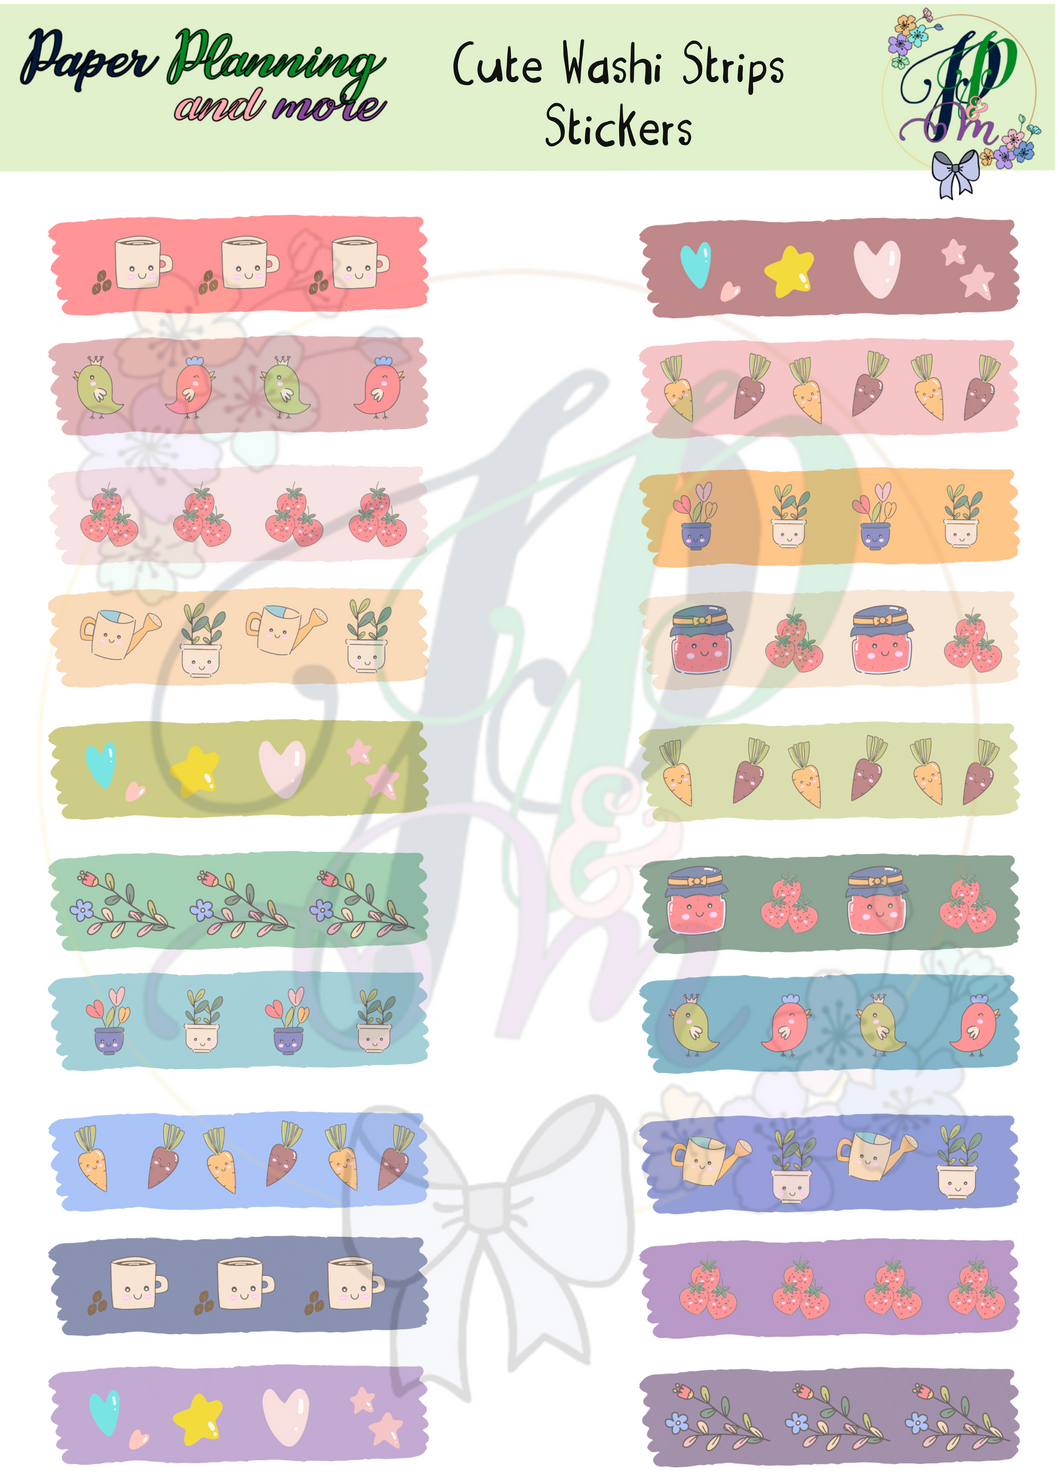 Cute Washi Strips Sticker Sheet